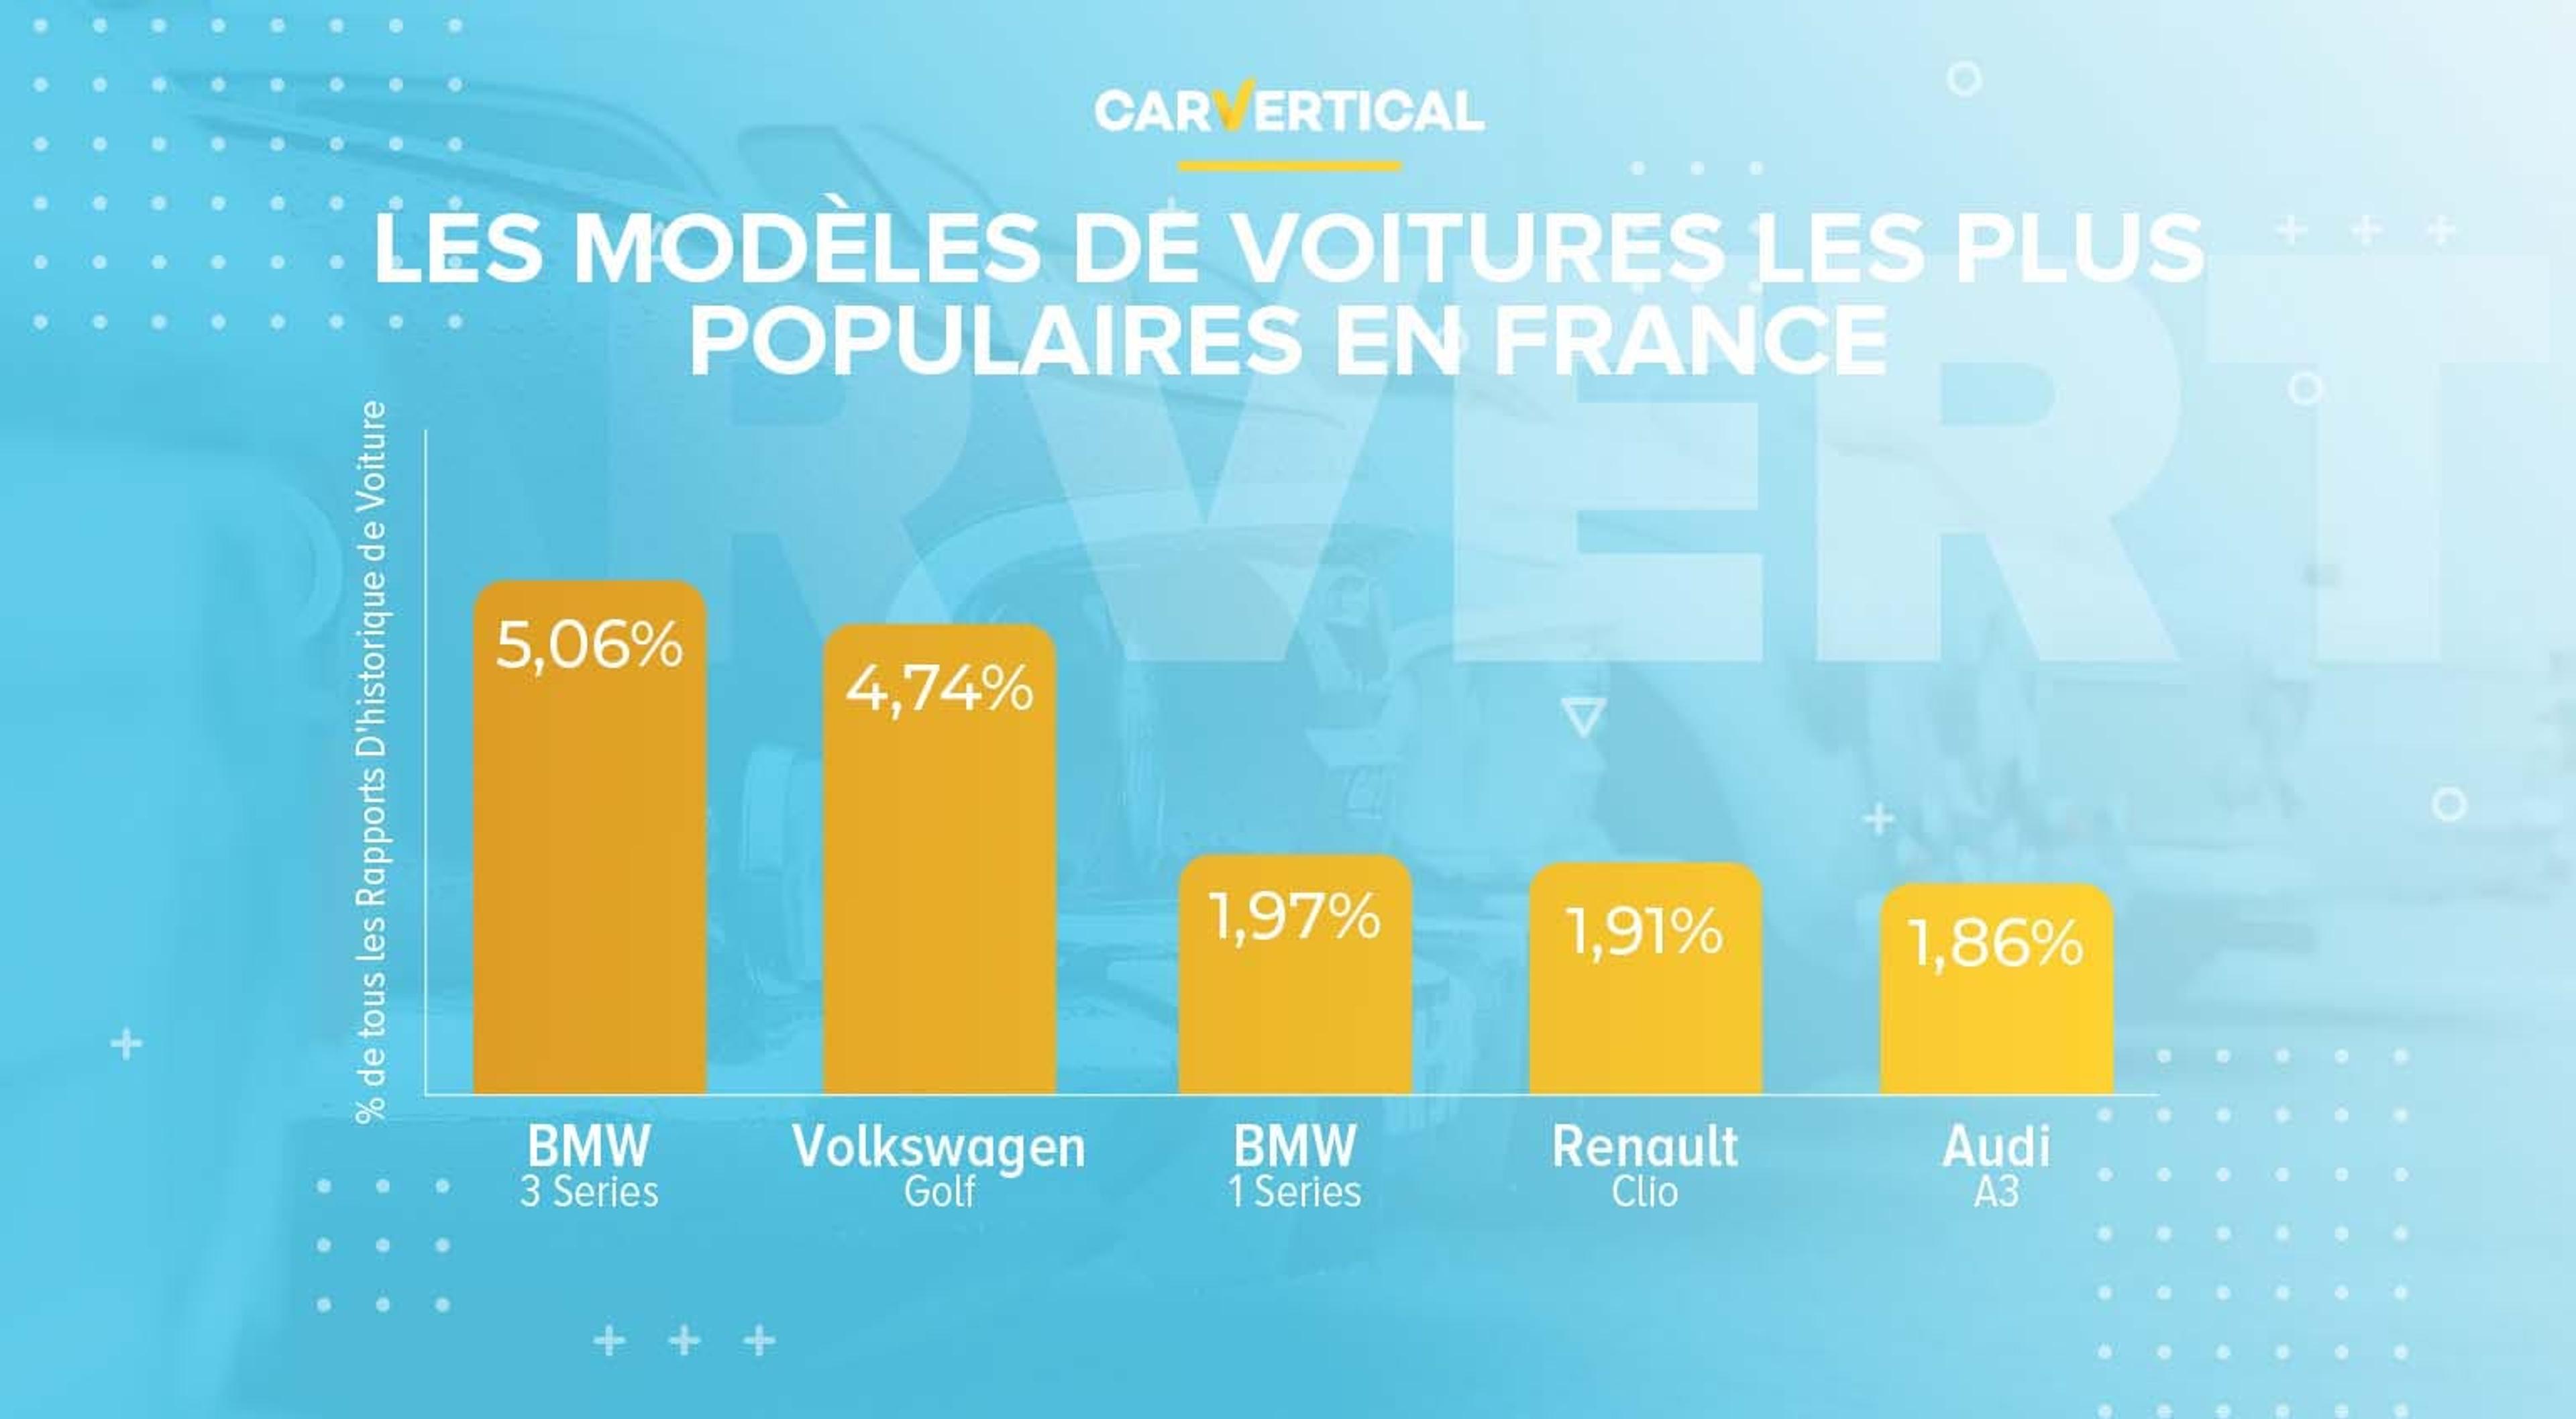 Les cinq marques automobiles les plus populaires en France